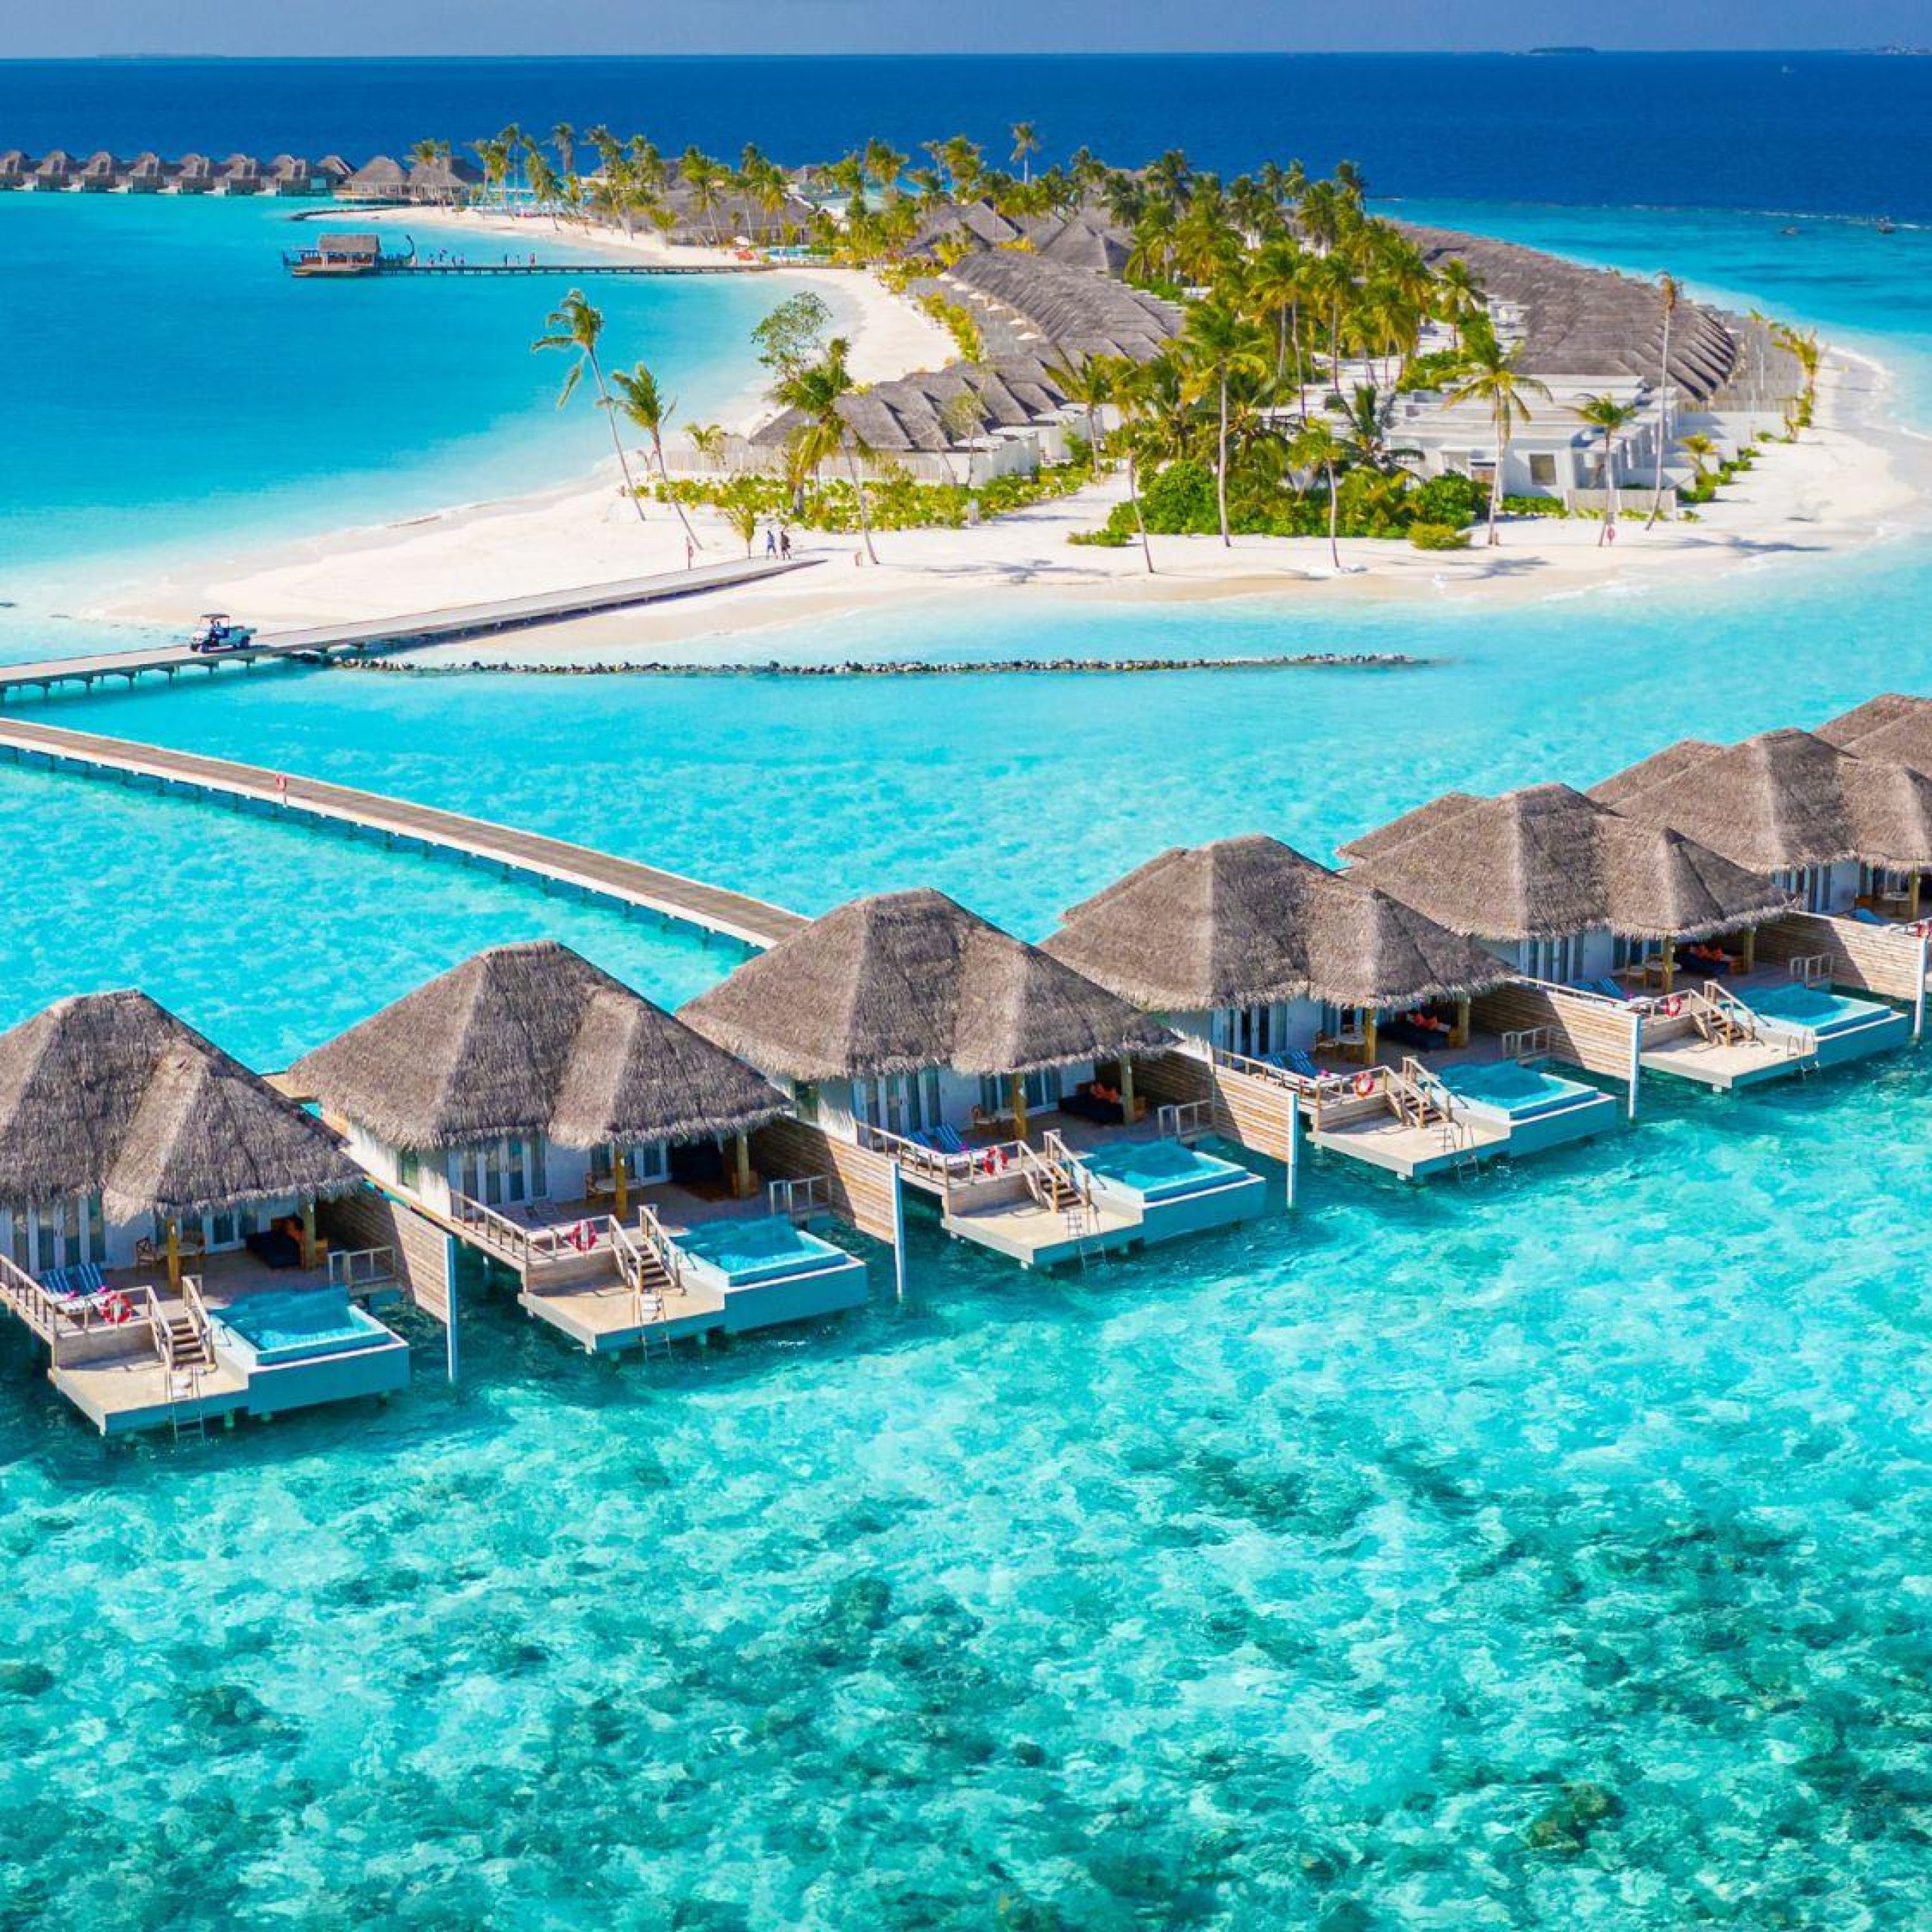 استكشاف الجزر المجاورة لجزر المالديف في رحلة لمدة يوم واحد